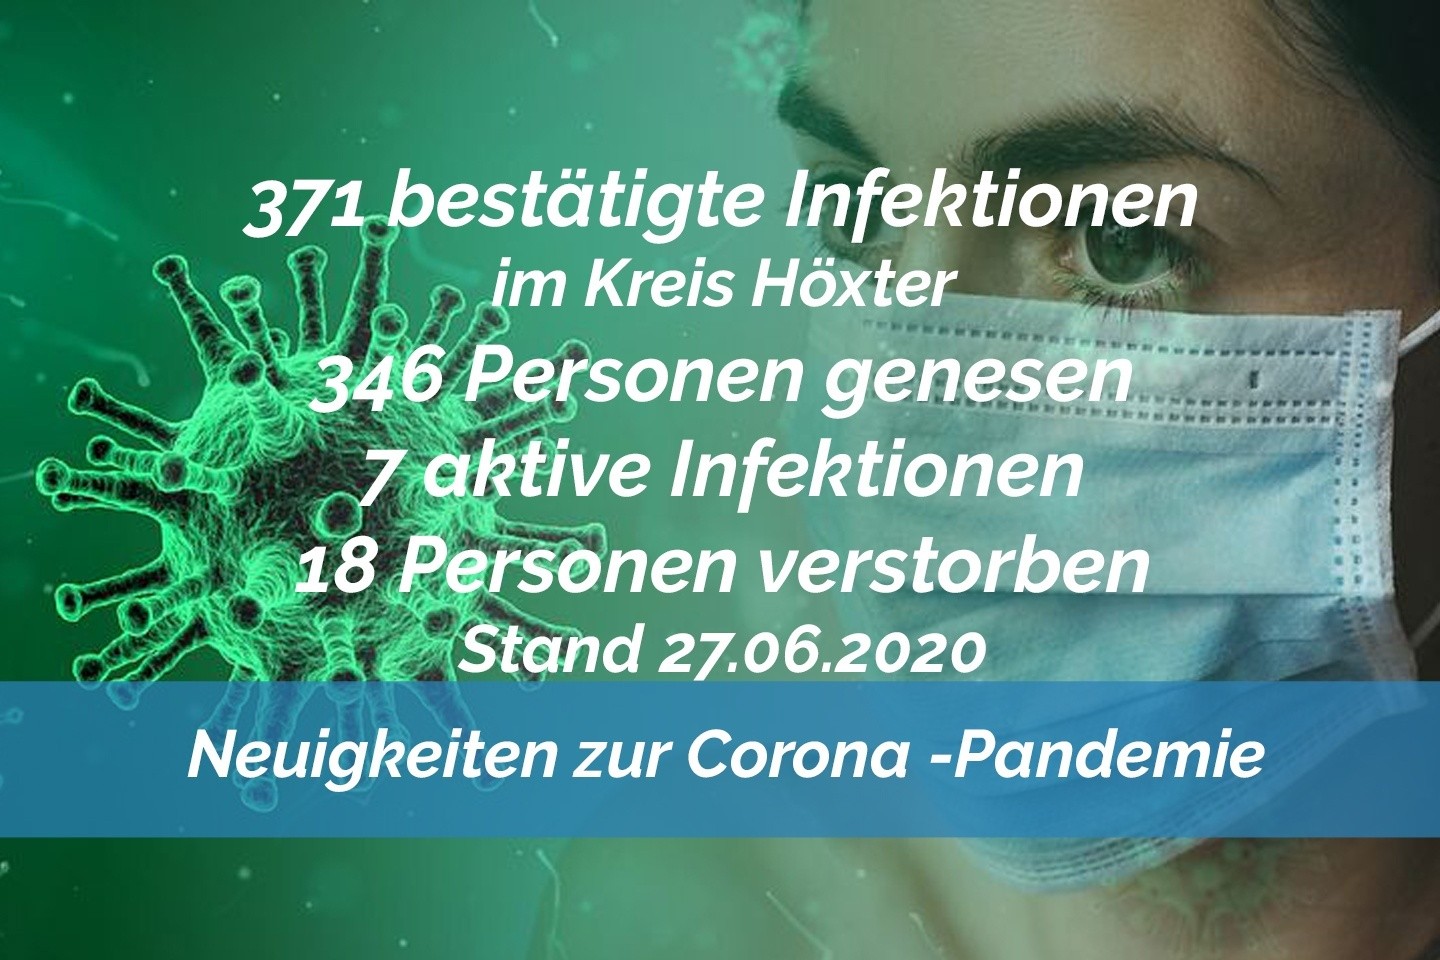 Update vom 27. Juni: 371 bestätigte Infektionen mit dem neuen Coronavirus im Kreis Höxter